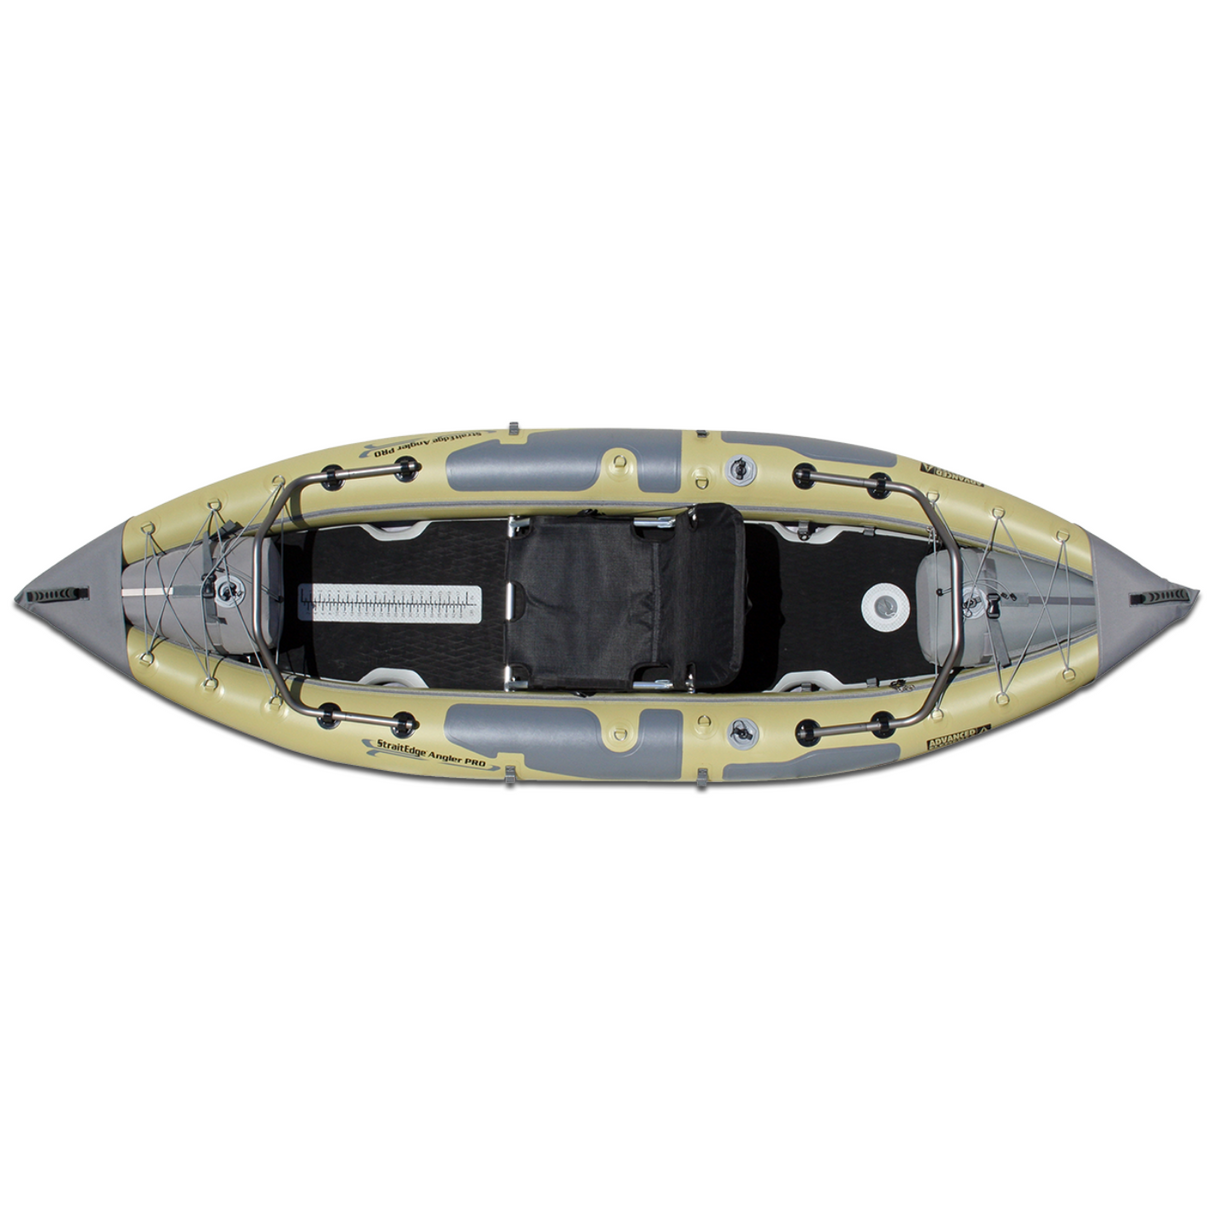 STRAITEDGE™ Angler Pro Inflatable Kayak